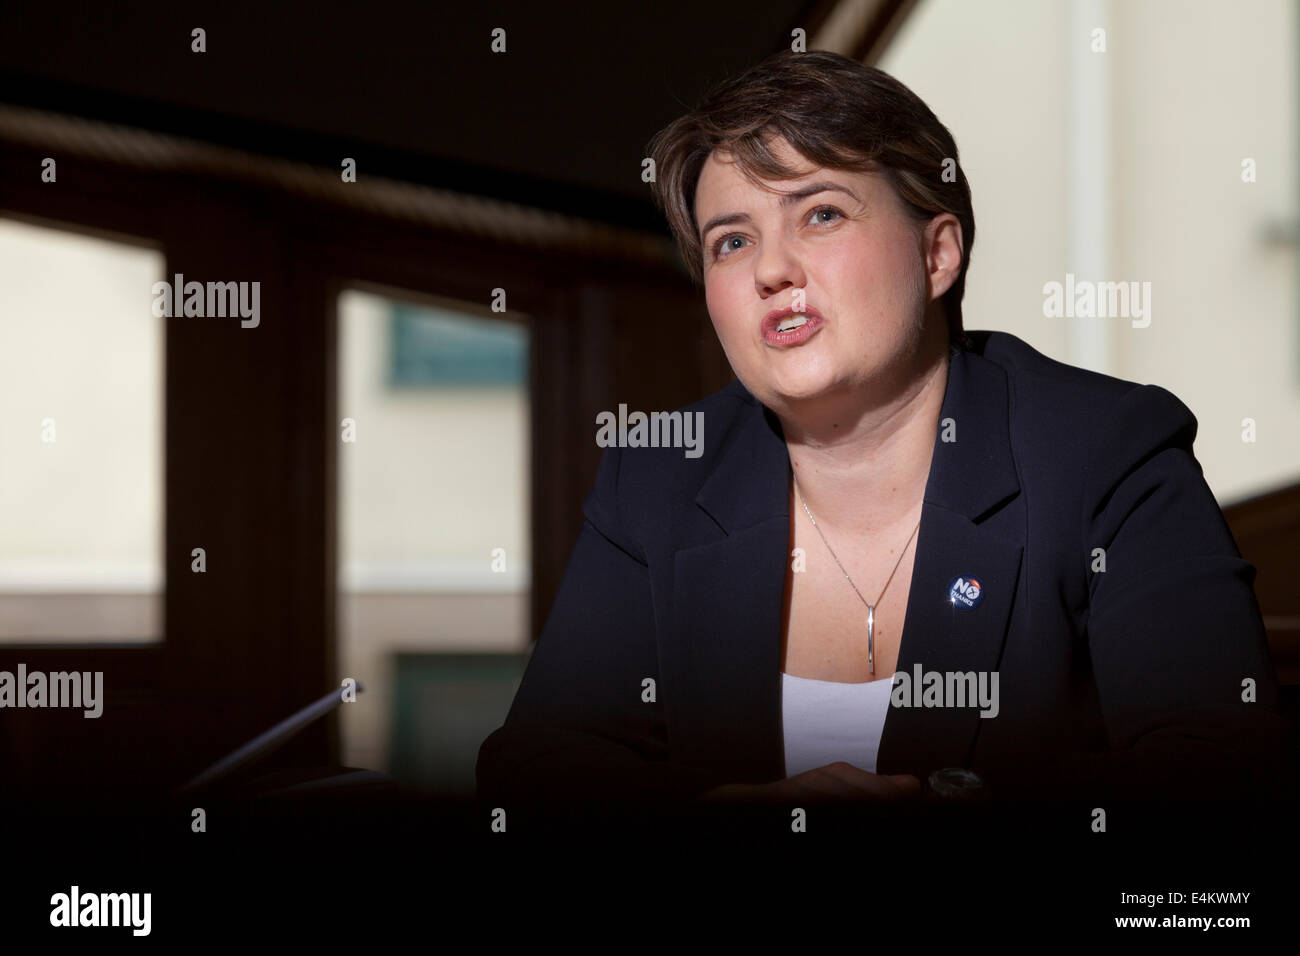 Ruth Davidson, MSP, líder del Partido Unionista y Conservador Escocés. Foto de stock